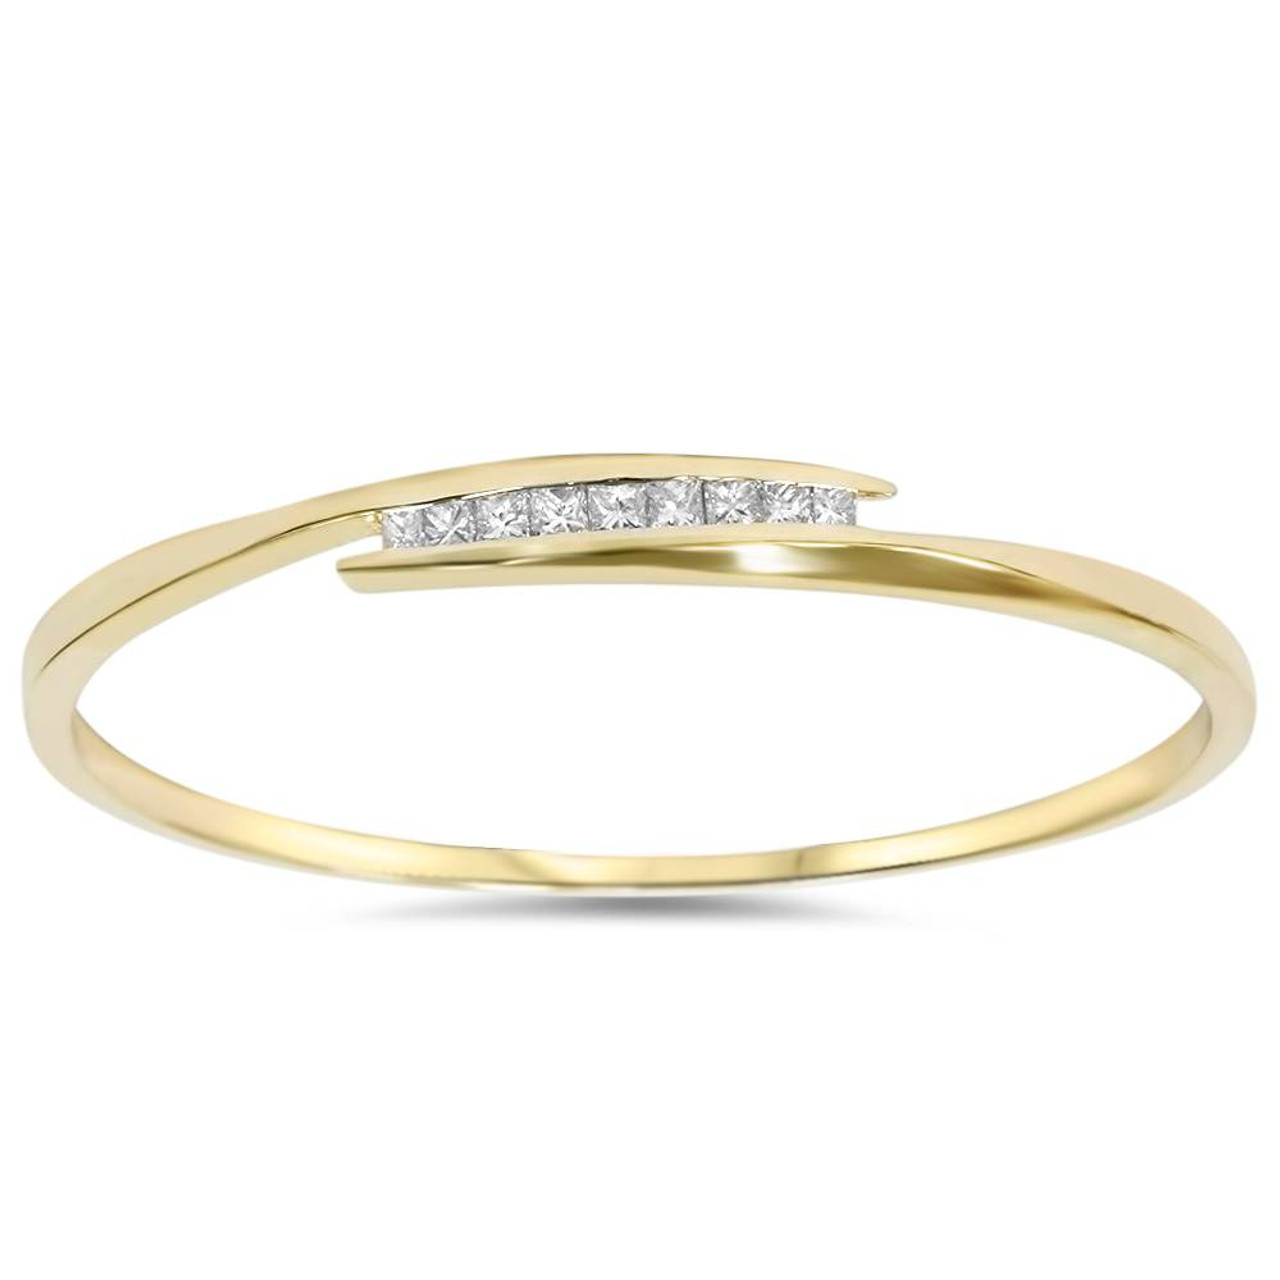 a gold bangle bracelet with diamonds